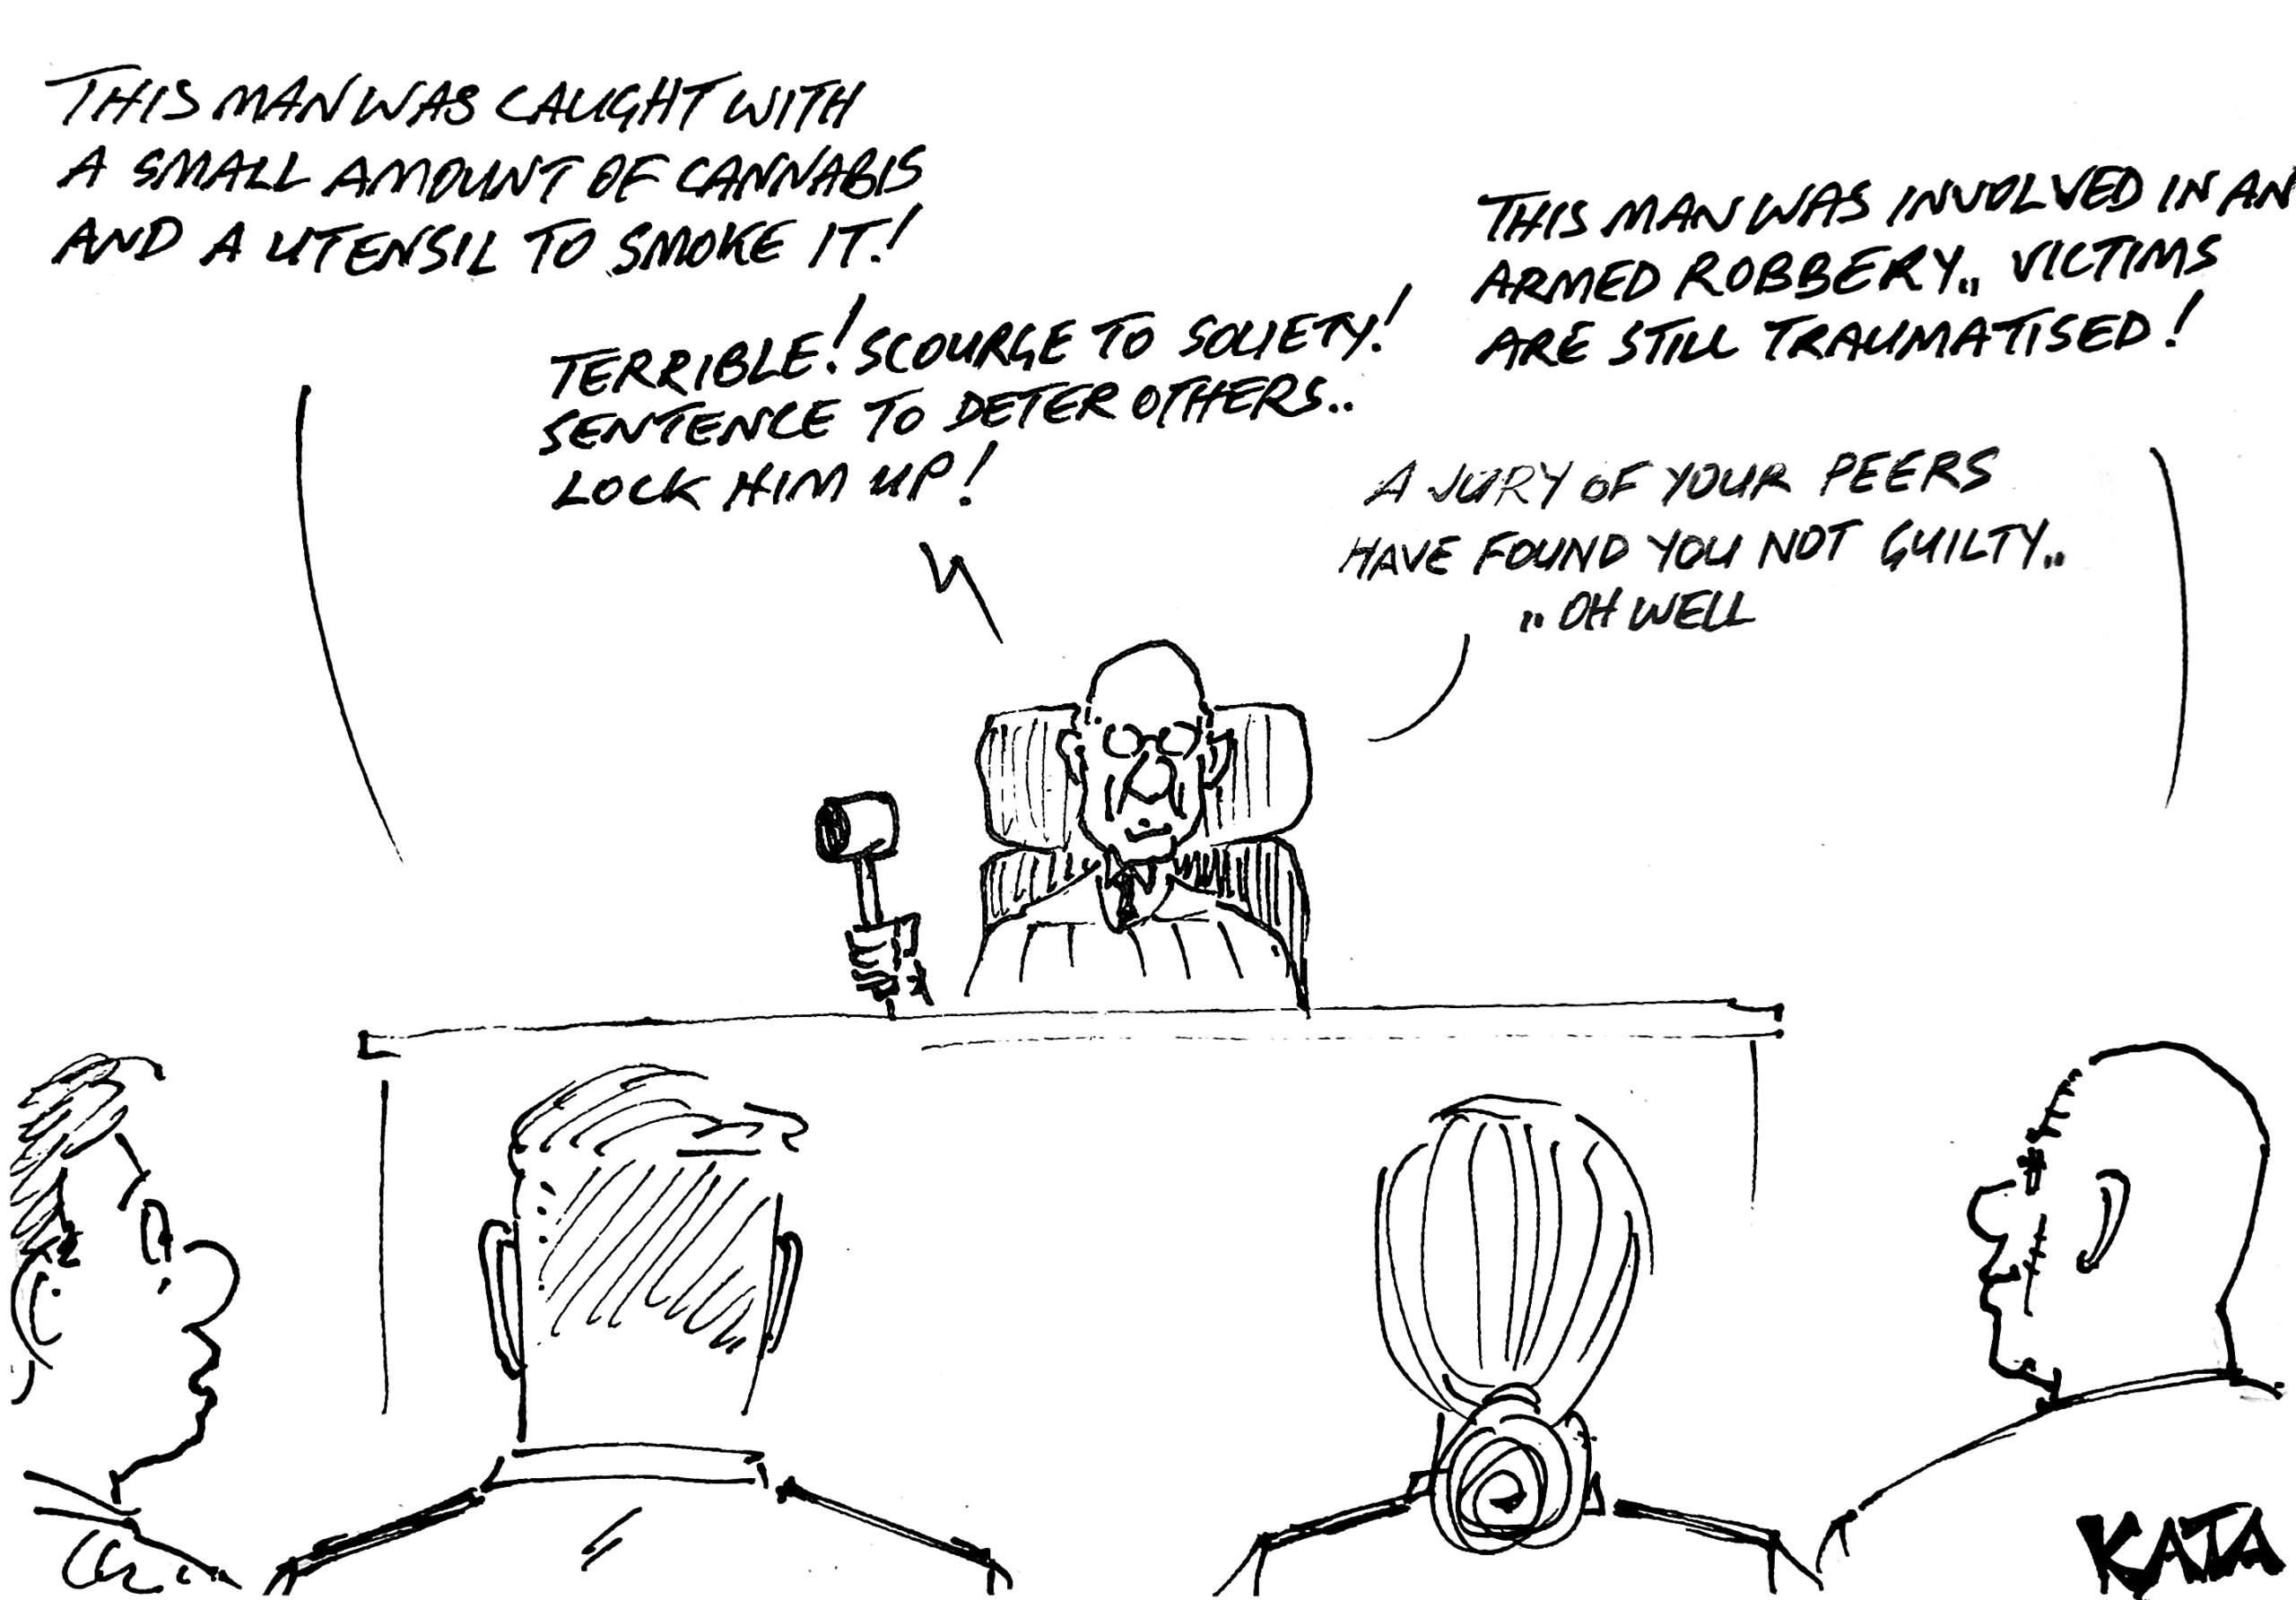 Kata: Jury trial